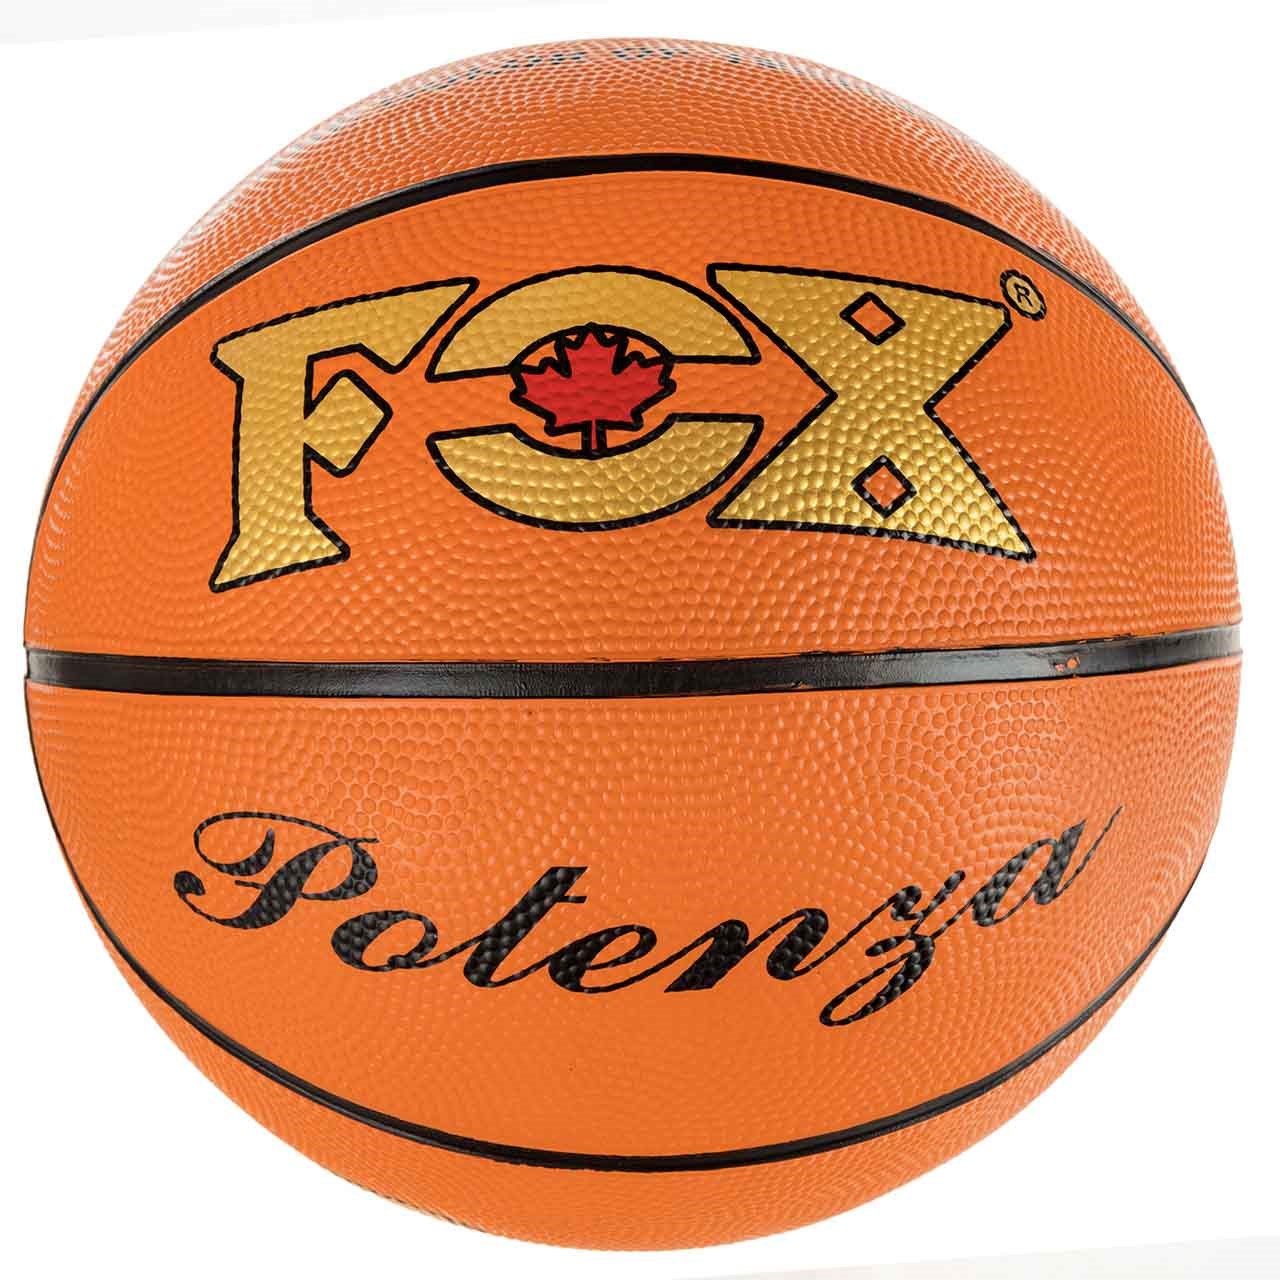 توپ بسکتبال فاکس مدل پوتنزا567 سایز 7